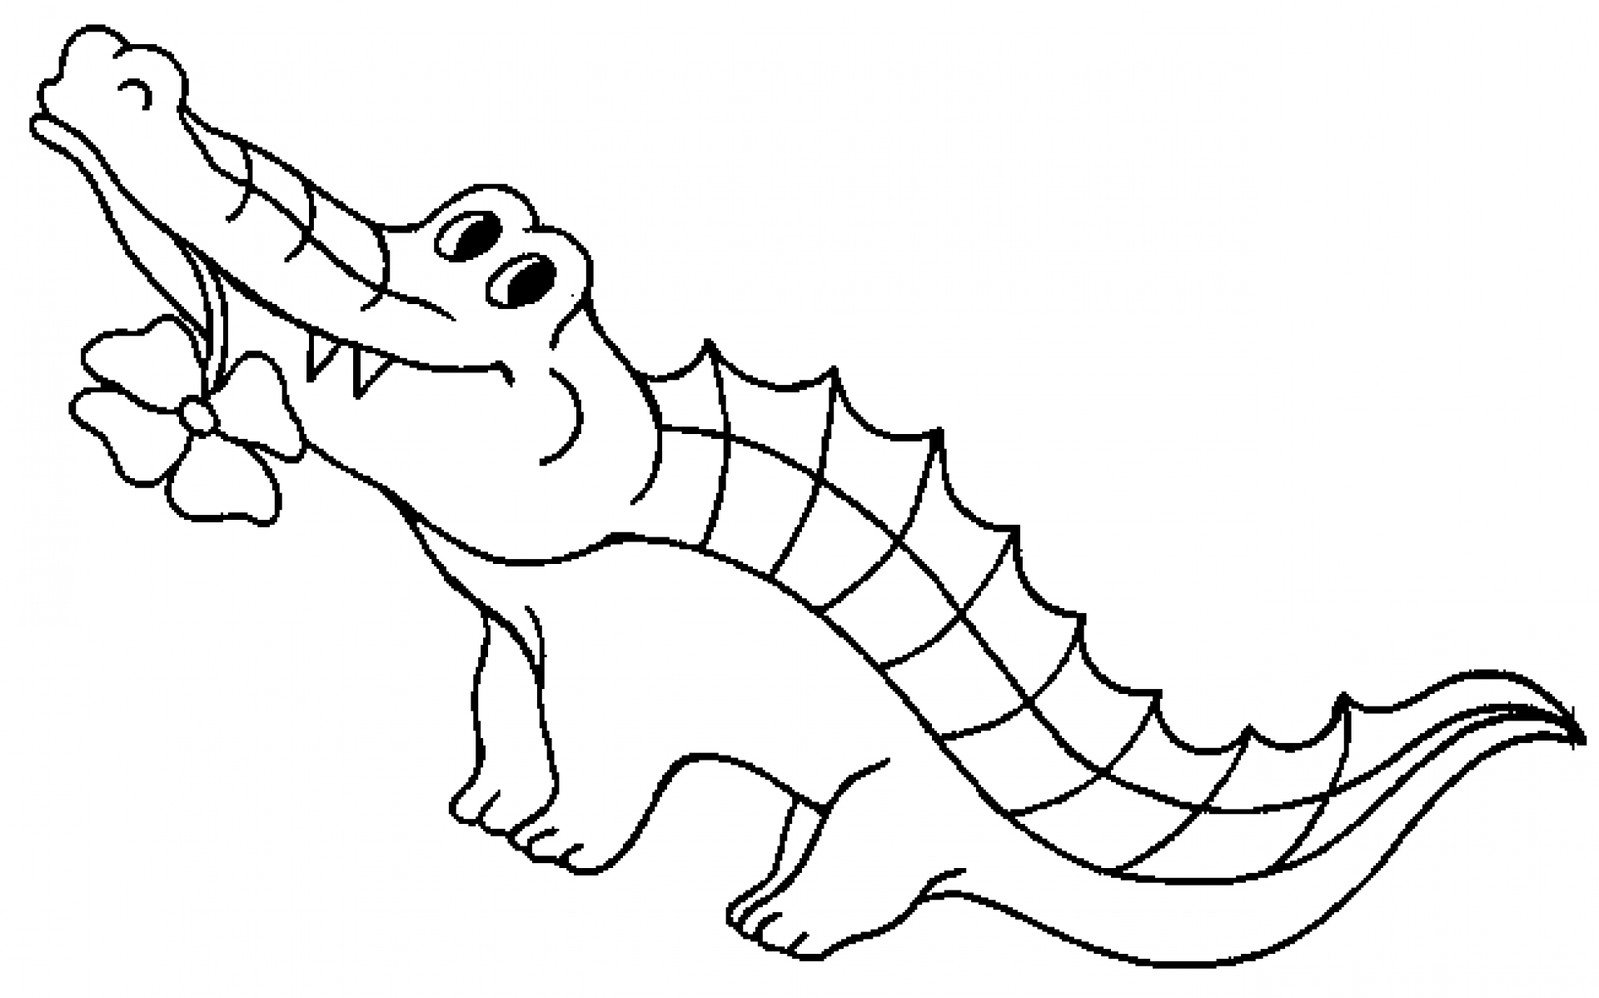 Детская раскраска крокодил